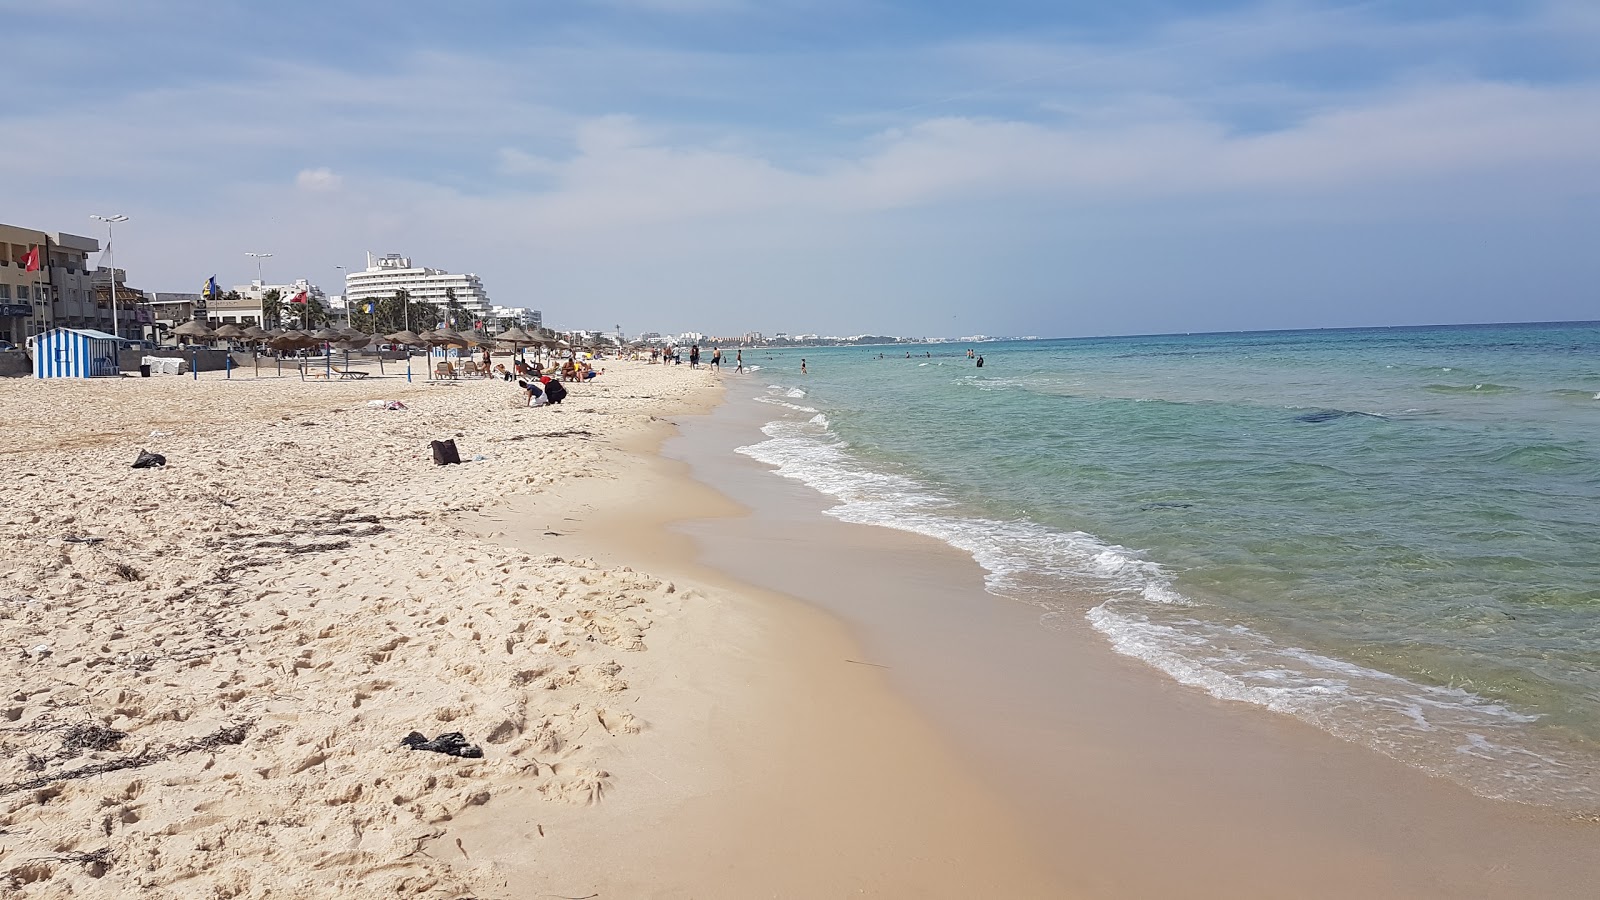 Bou Jaafar beach'in fotoğrafı beyaz ince kum yüzey ile